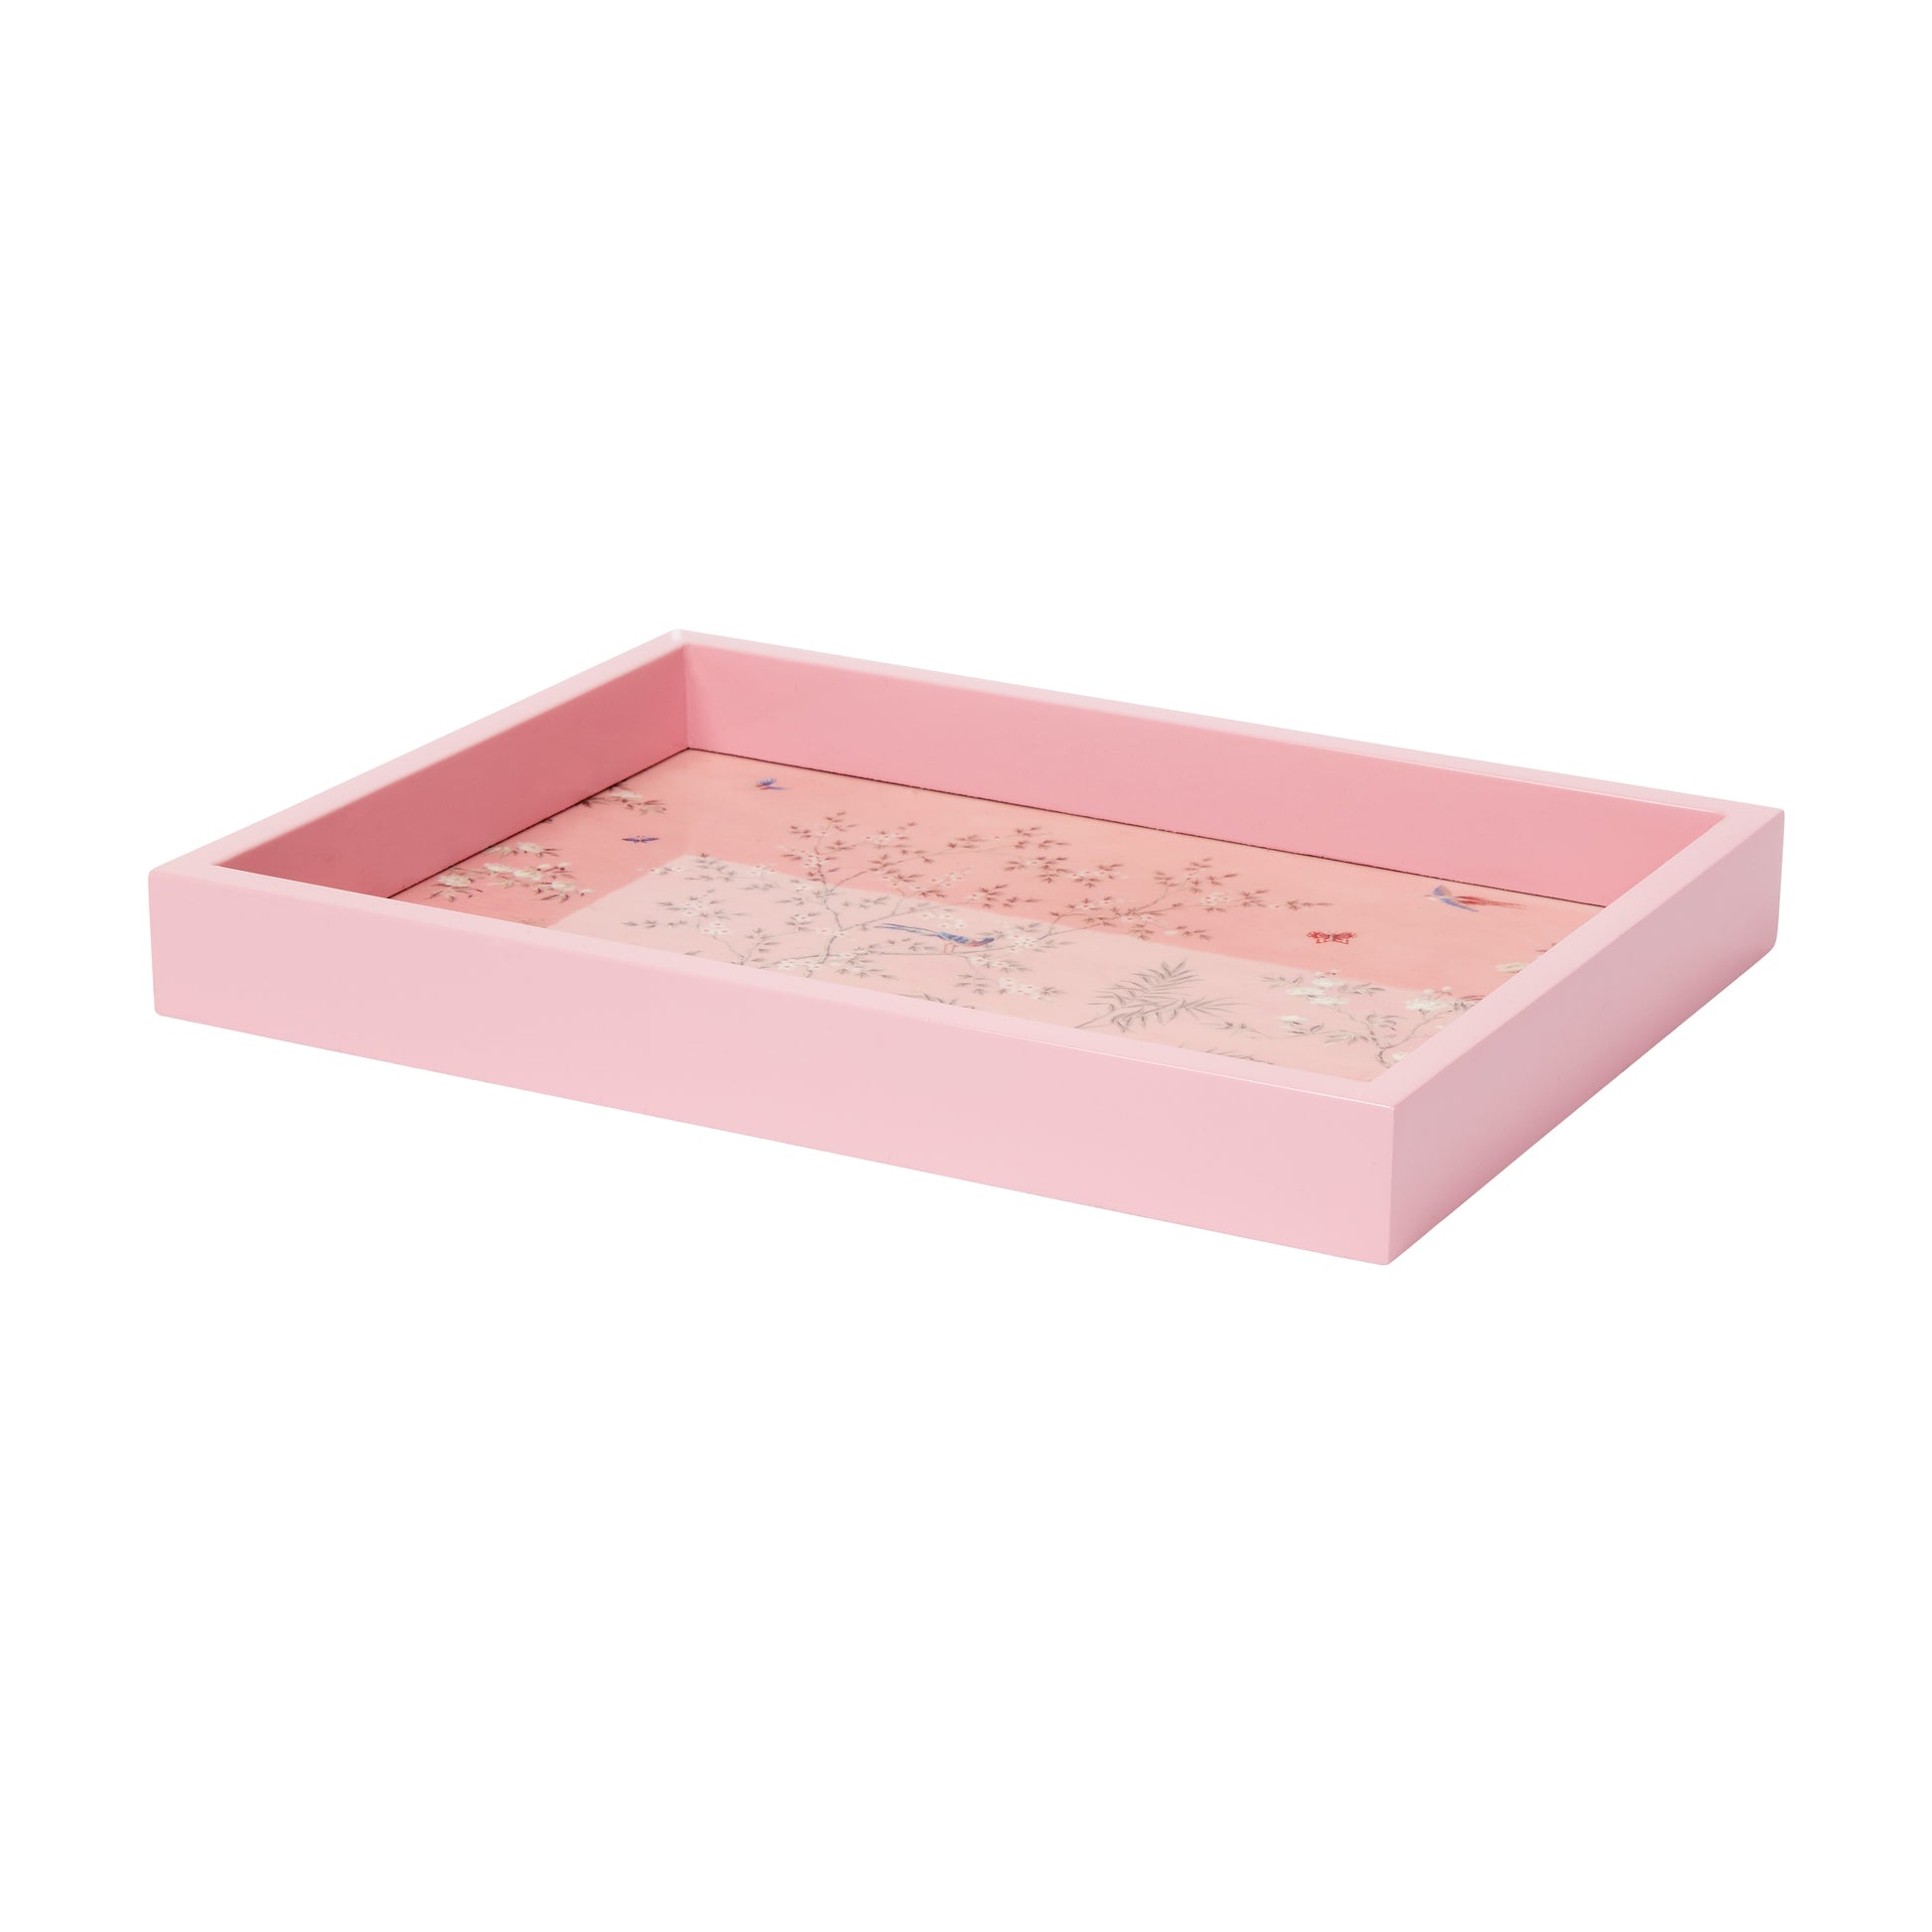 Pink Small Chinoiserie Tray - Addison Ross Ltd EU